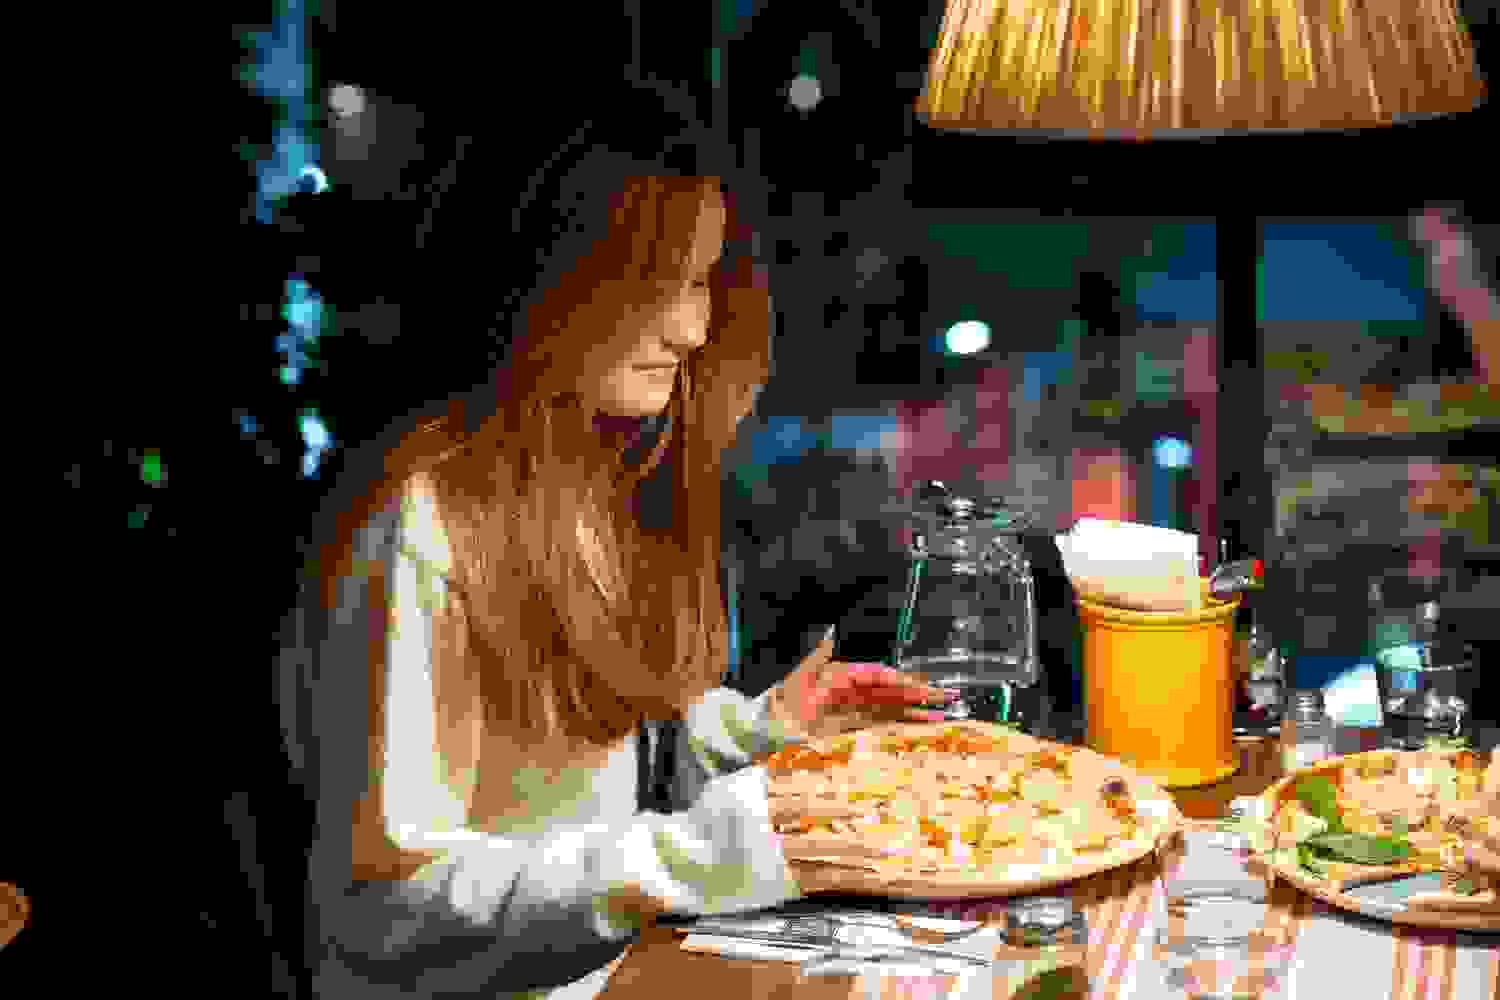 hcr-katinkulta-classic-pizza-1500x1000-4-edit.jpeg